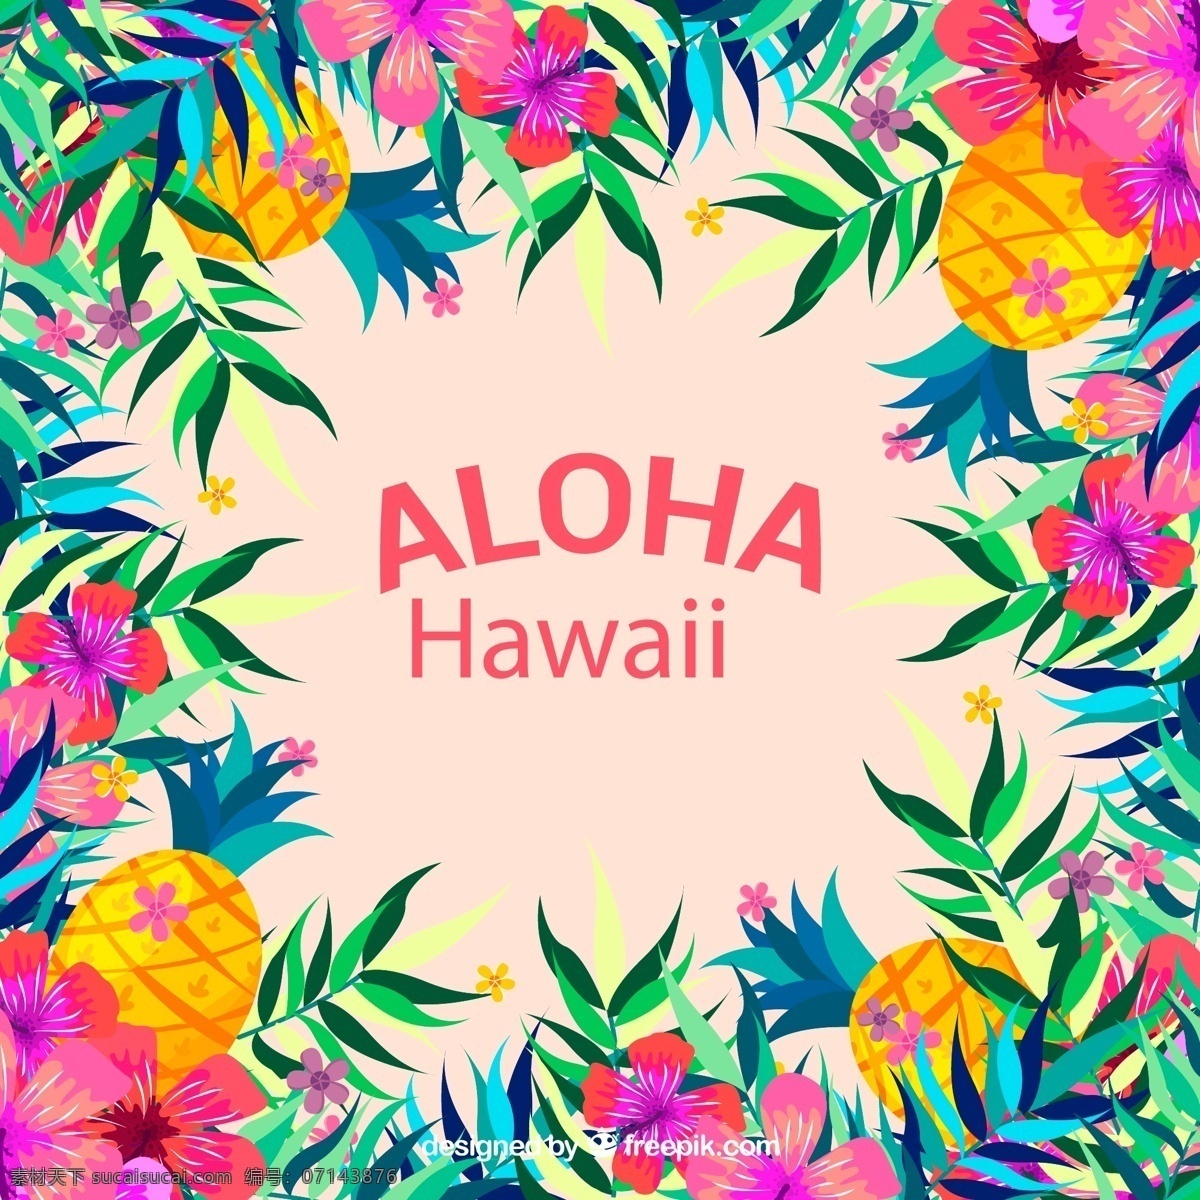 花草 水果 框架 扶桑花 棕榈树叶 凤梨 彩绘 夏威夷 花卉 矢量 高清图片